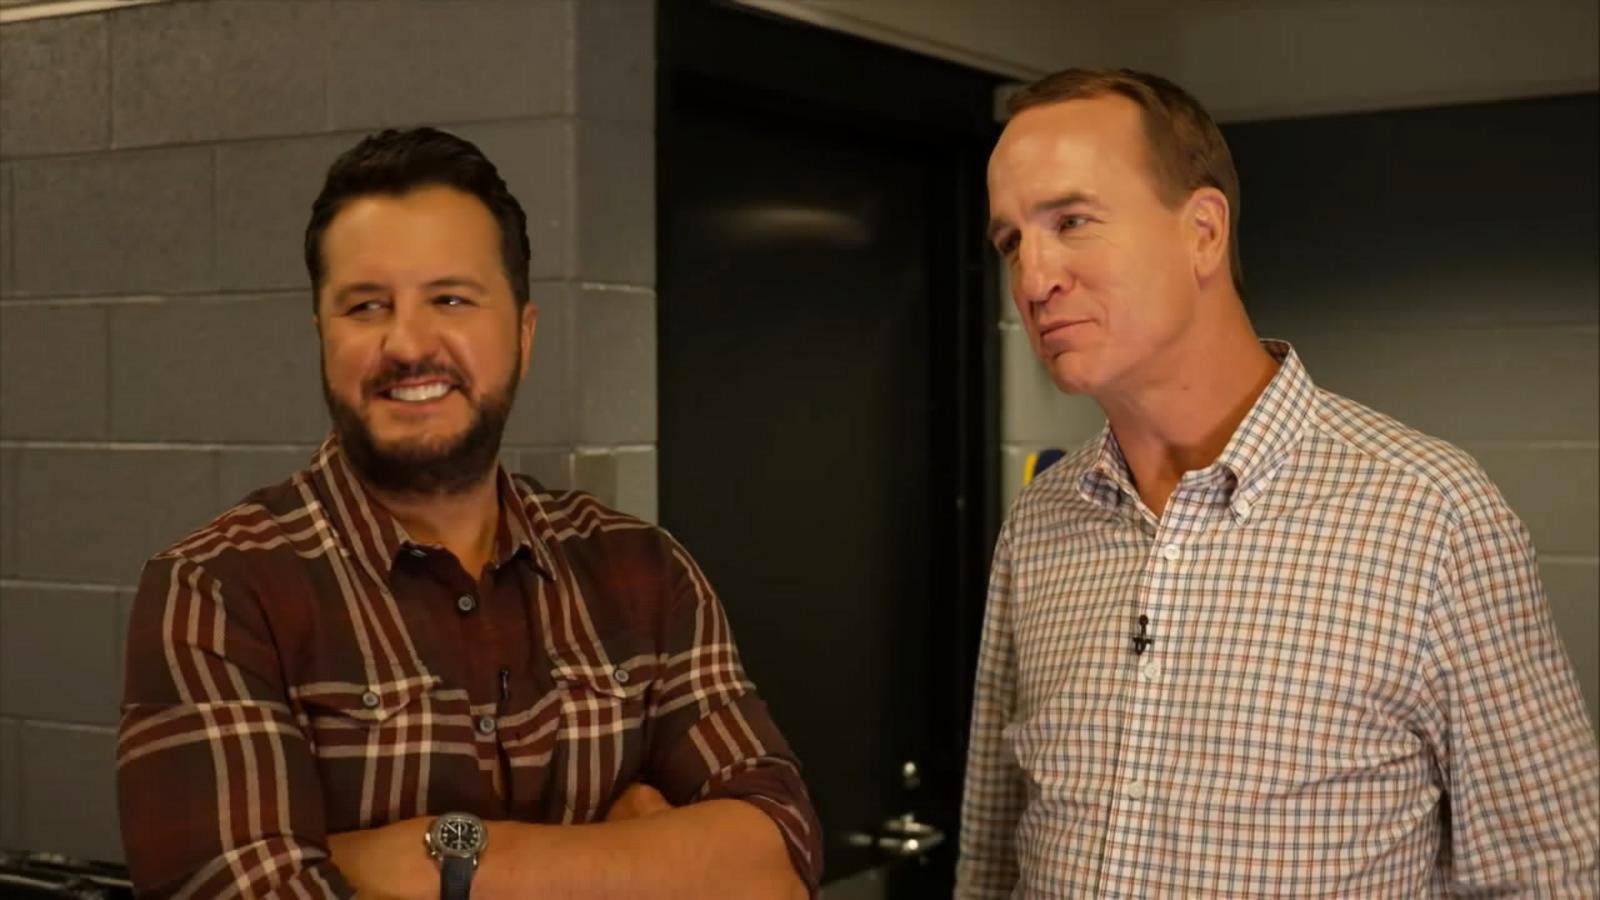 VIDEO: Luke Bryan and Peyton Manning talk CMA Awards